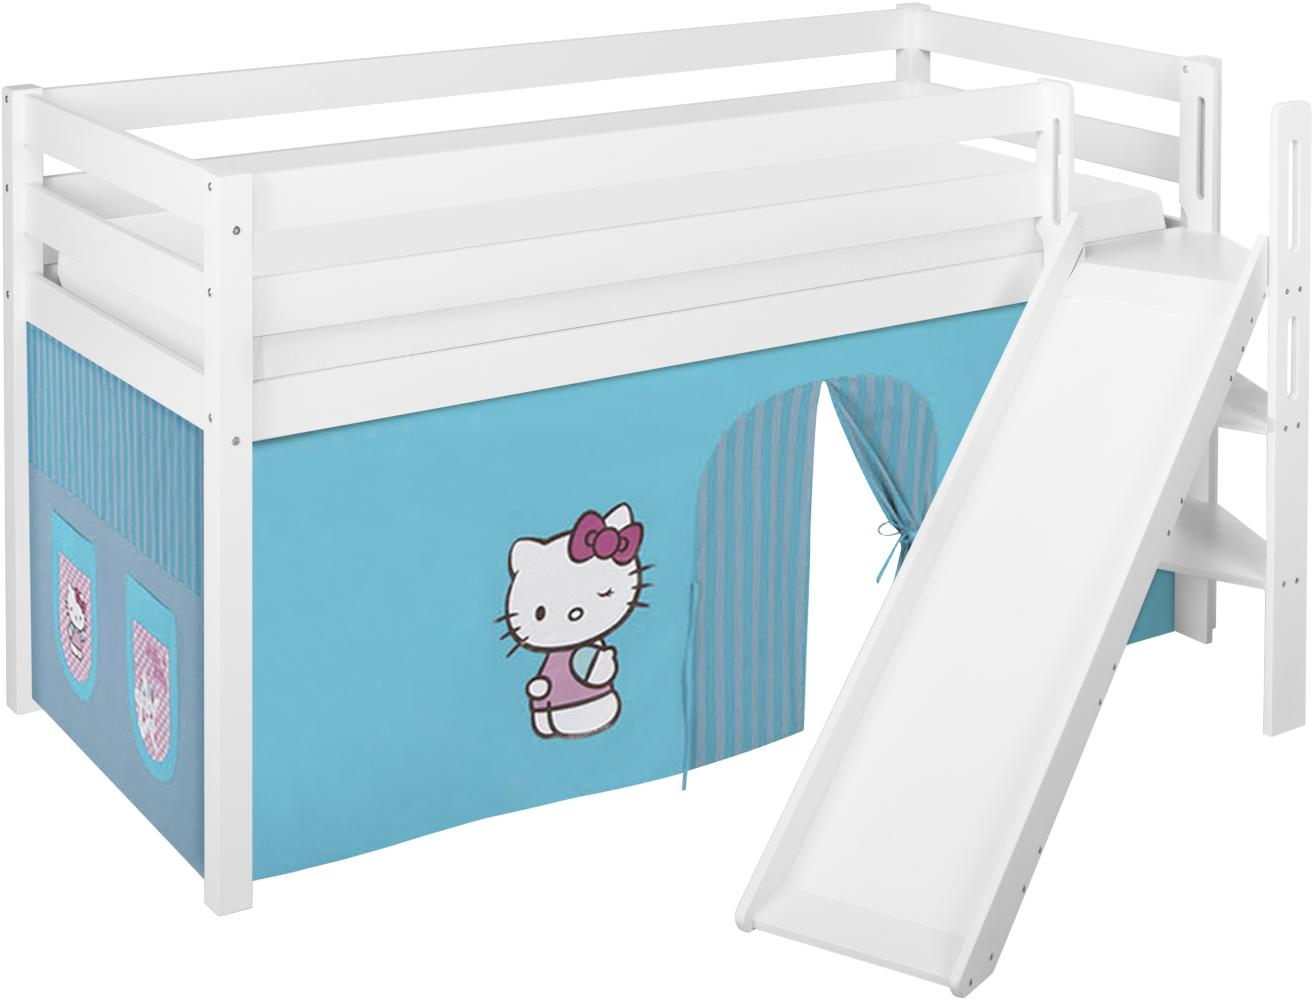 Lilokids 'Jelle' Spielbett 90 x 200 cm, Hello Kitty Türkis, Kiefer massiv, mit schräger Rutsche und Vorhang Bild 1